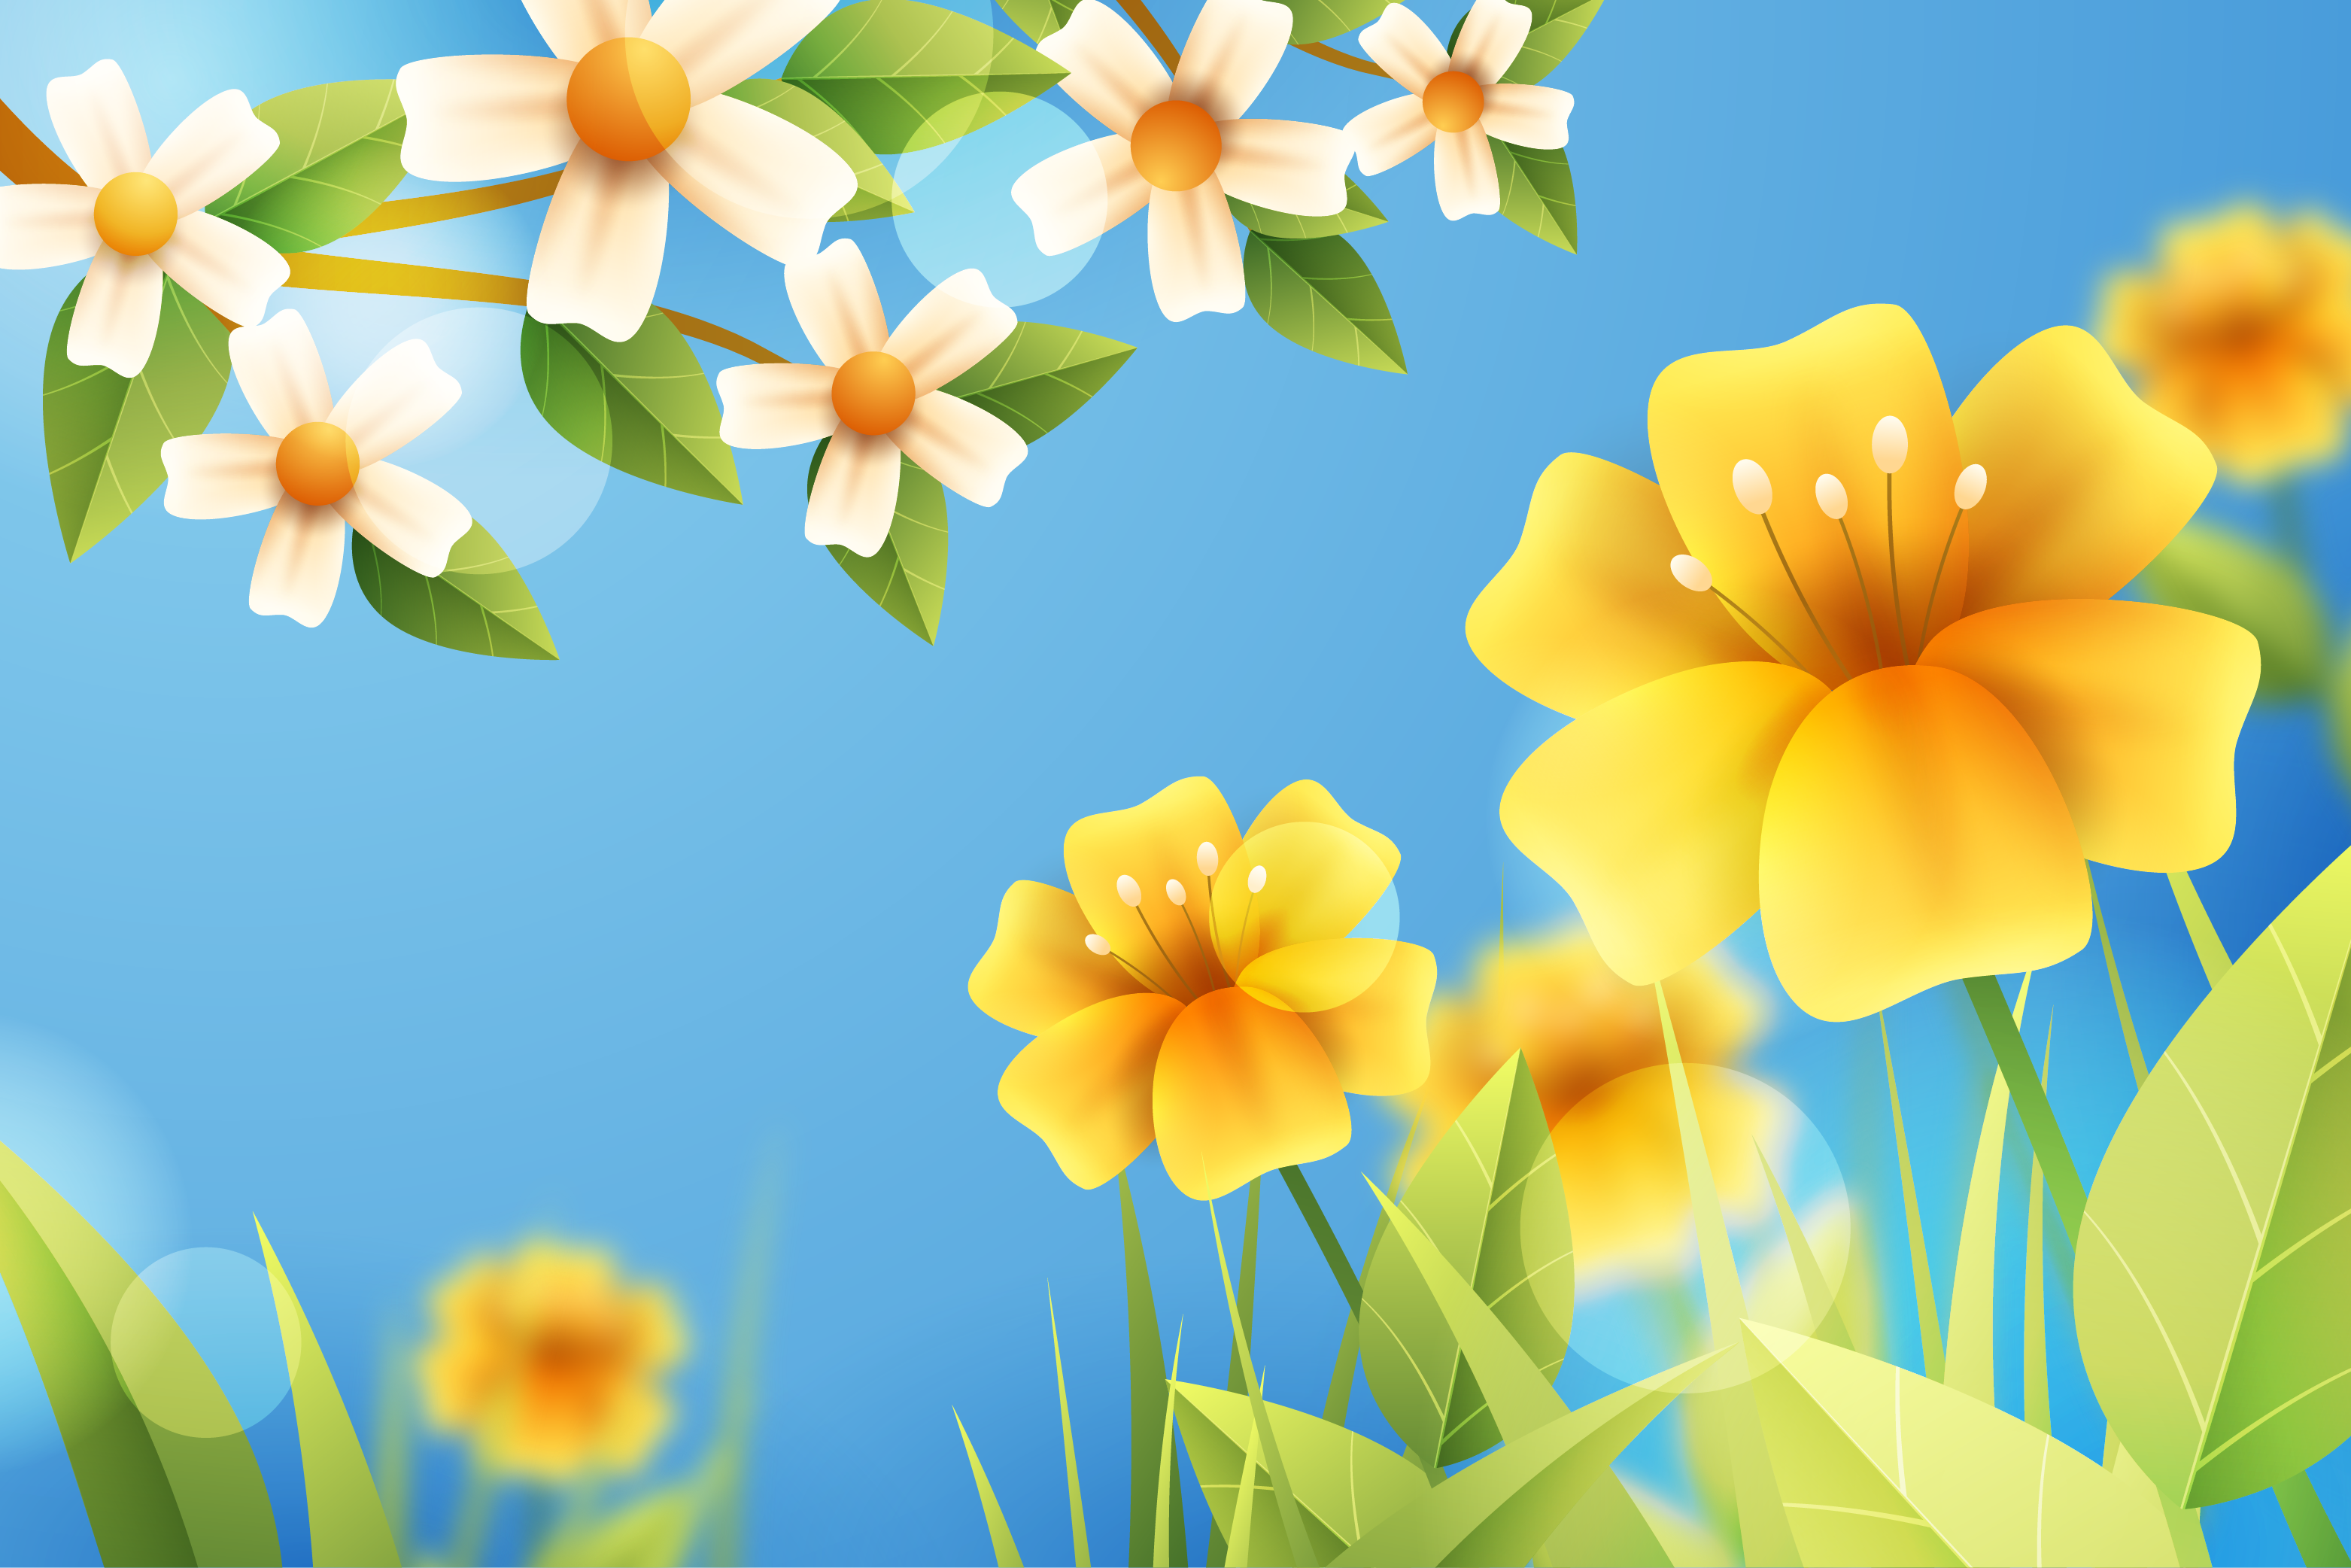 28 апреля - 1 мая - тематические выходные "Жаркие! Майские! Твои!"